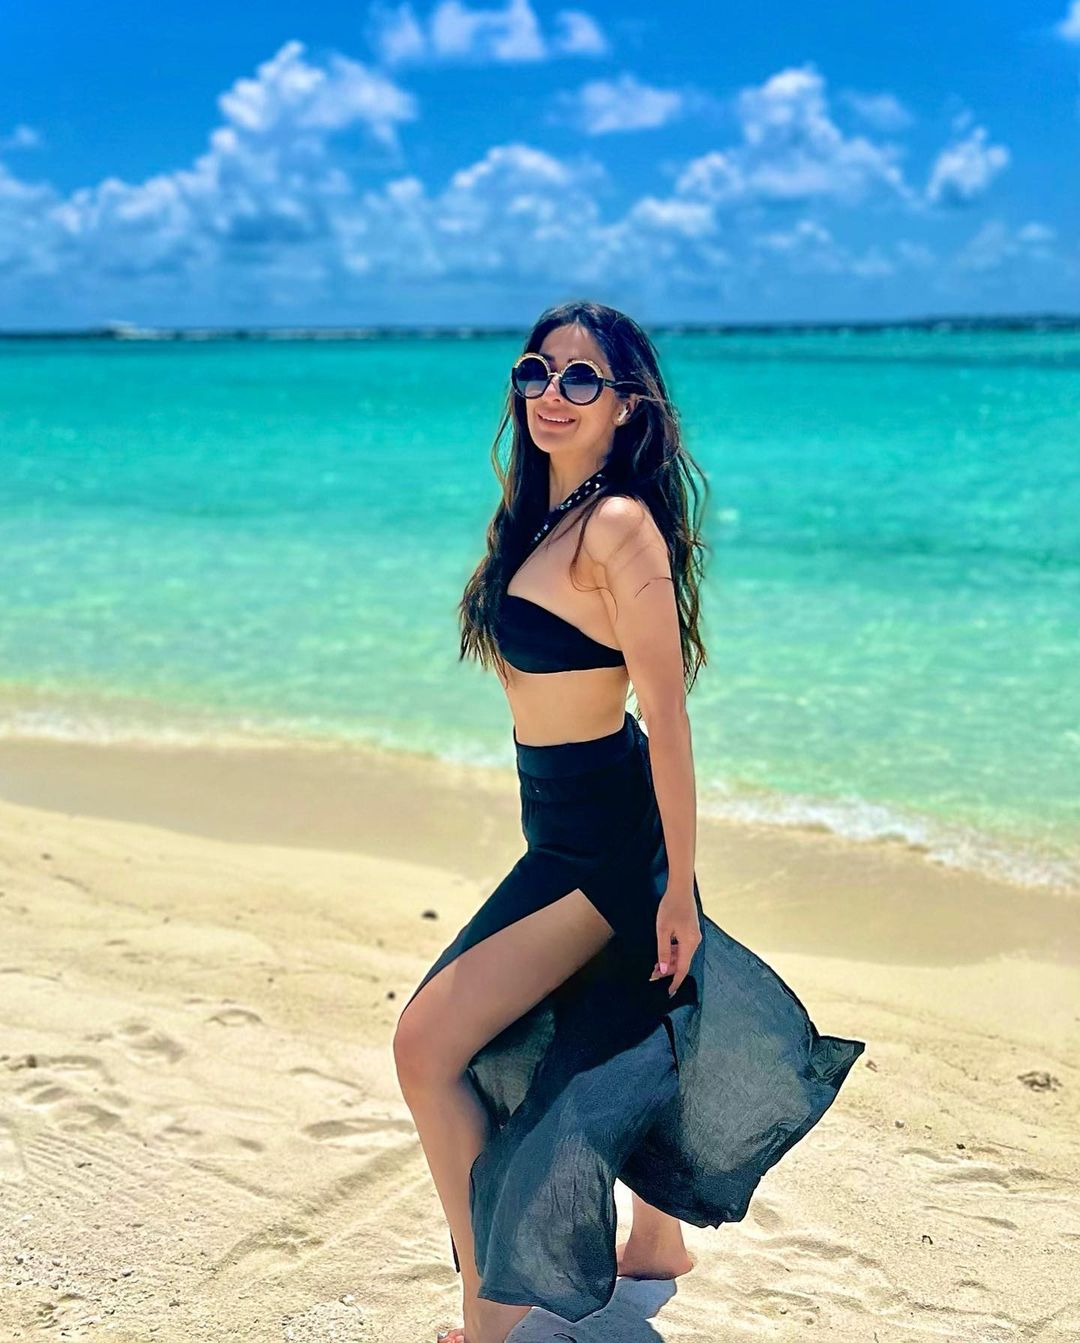 Raai laxmi hot bikini photos trending in social media